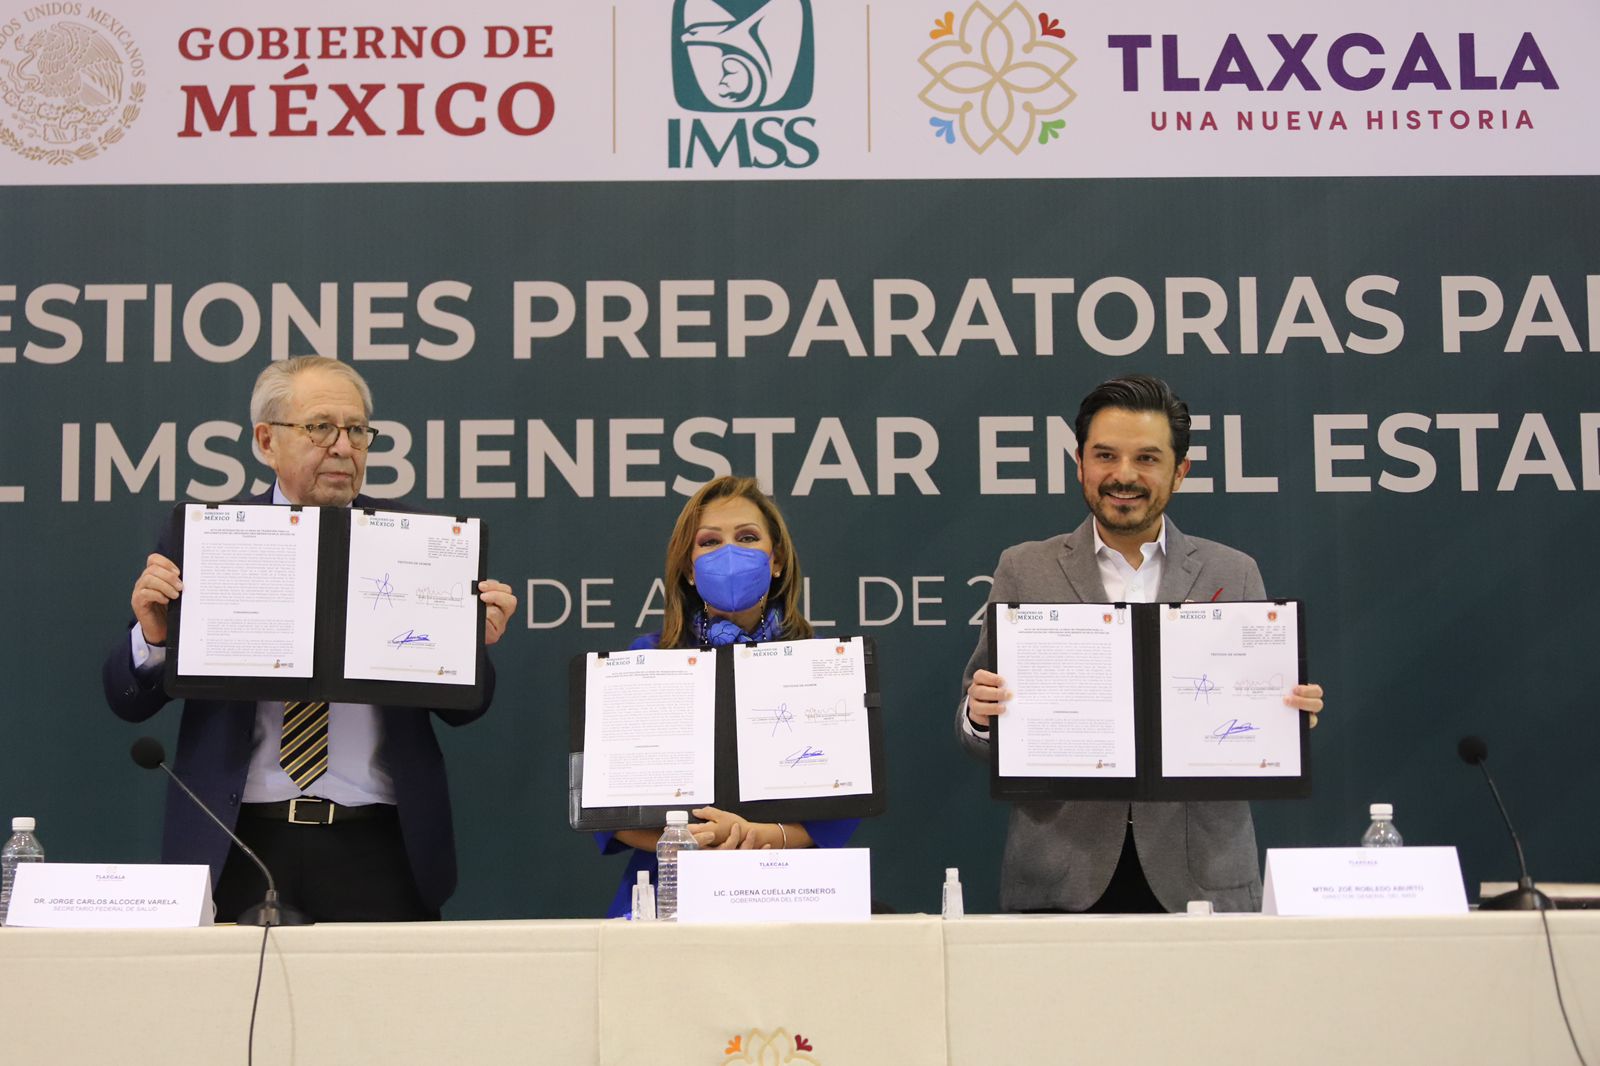 Tlaxcala contratará 500 médicos y enfermeras para el IMSS-Bienestar